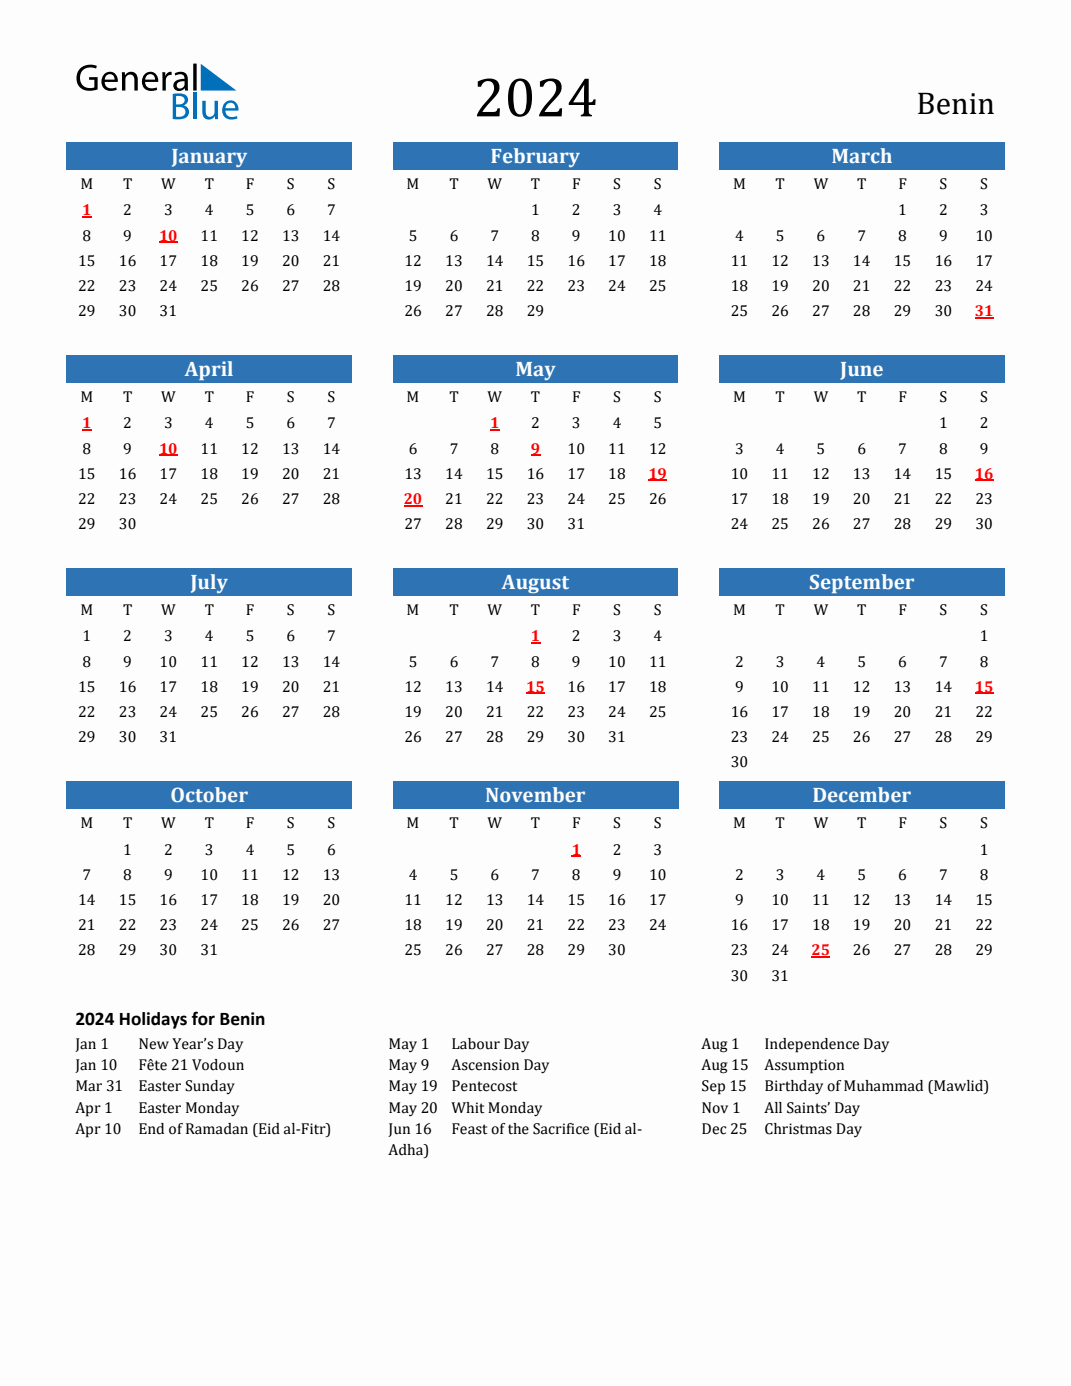 2024 Holiday Calendar for Benin - Monday Start